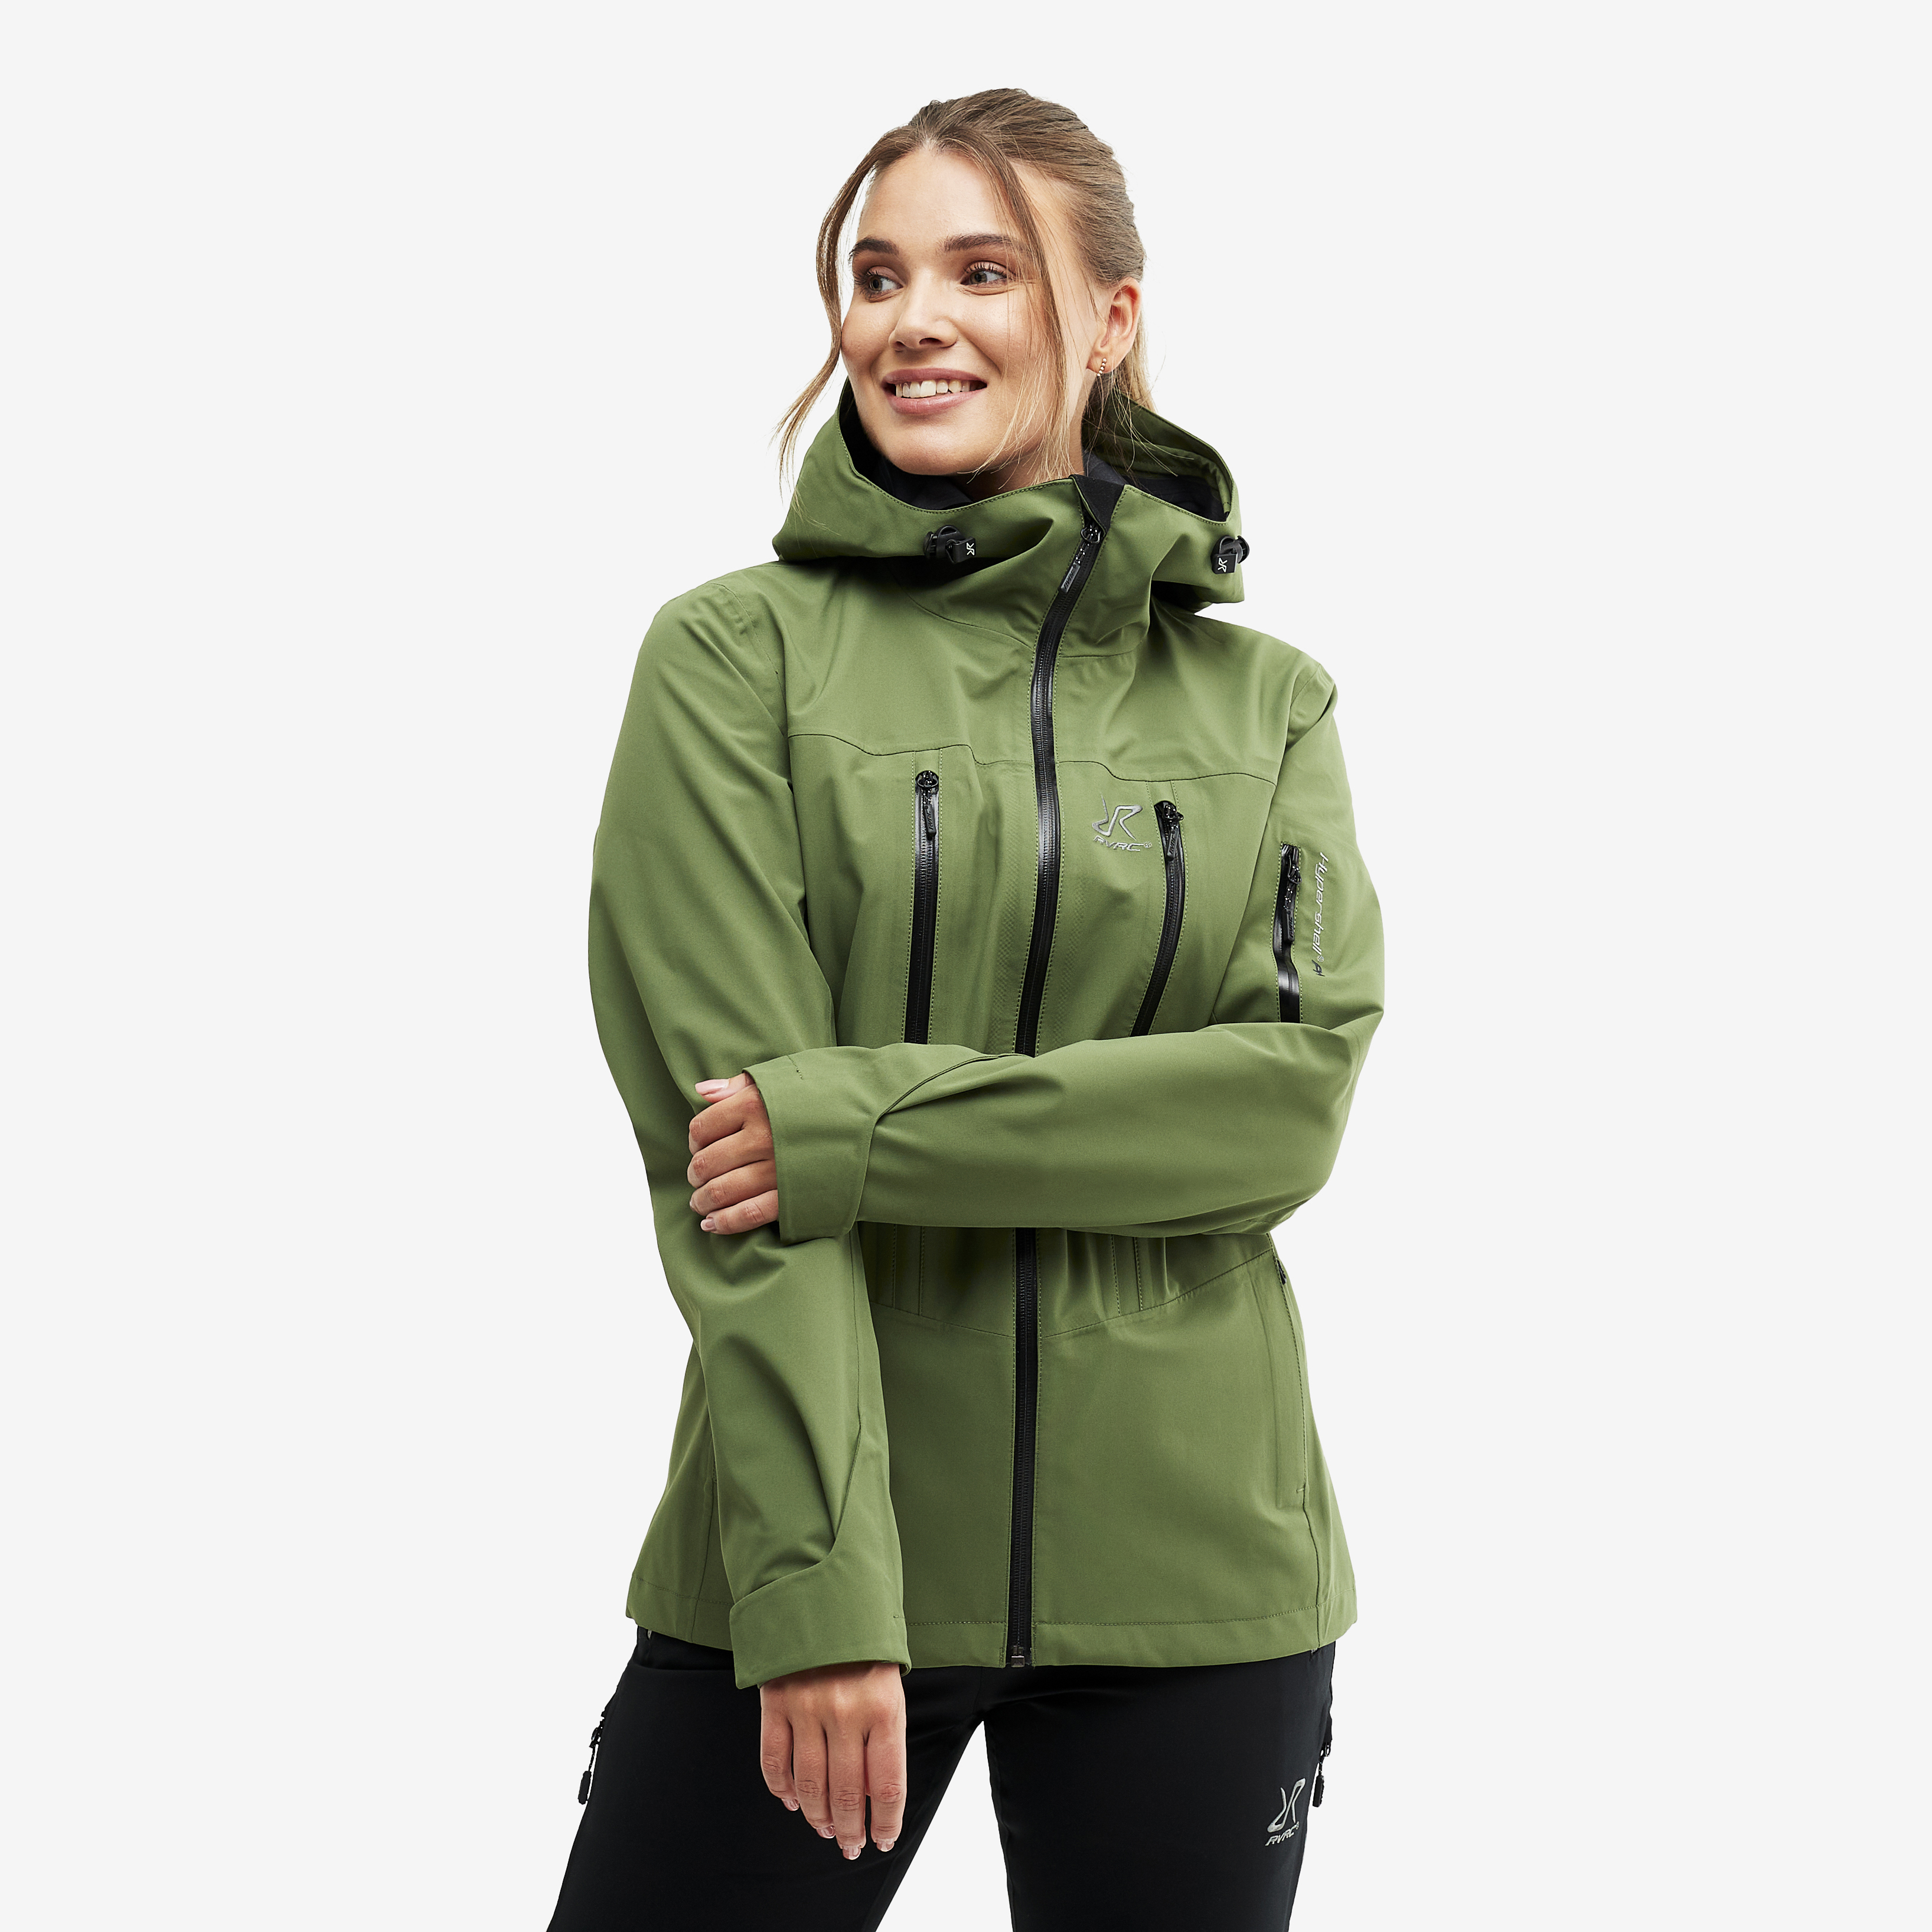 Whisper waterproof jacket for women in green